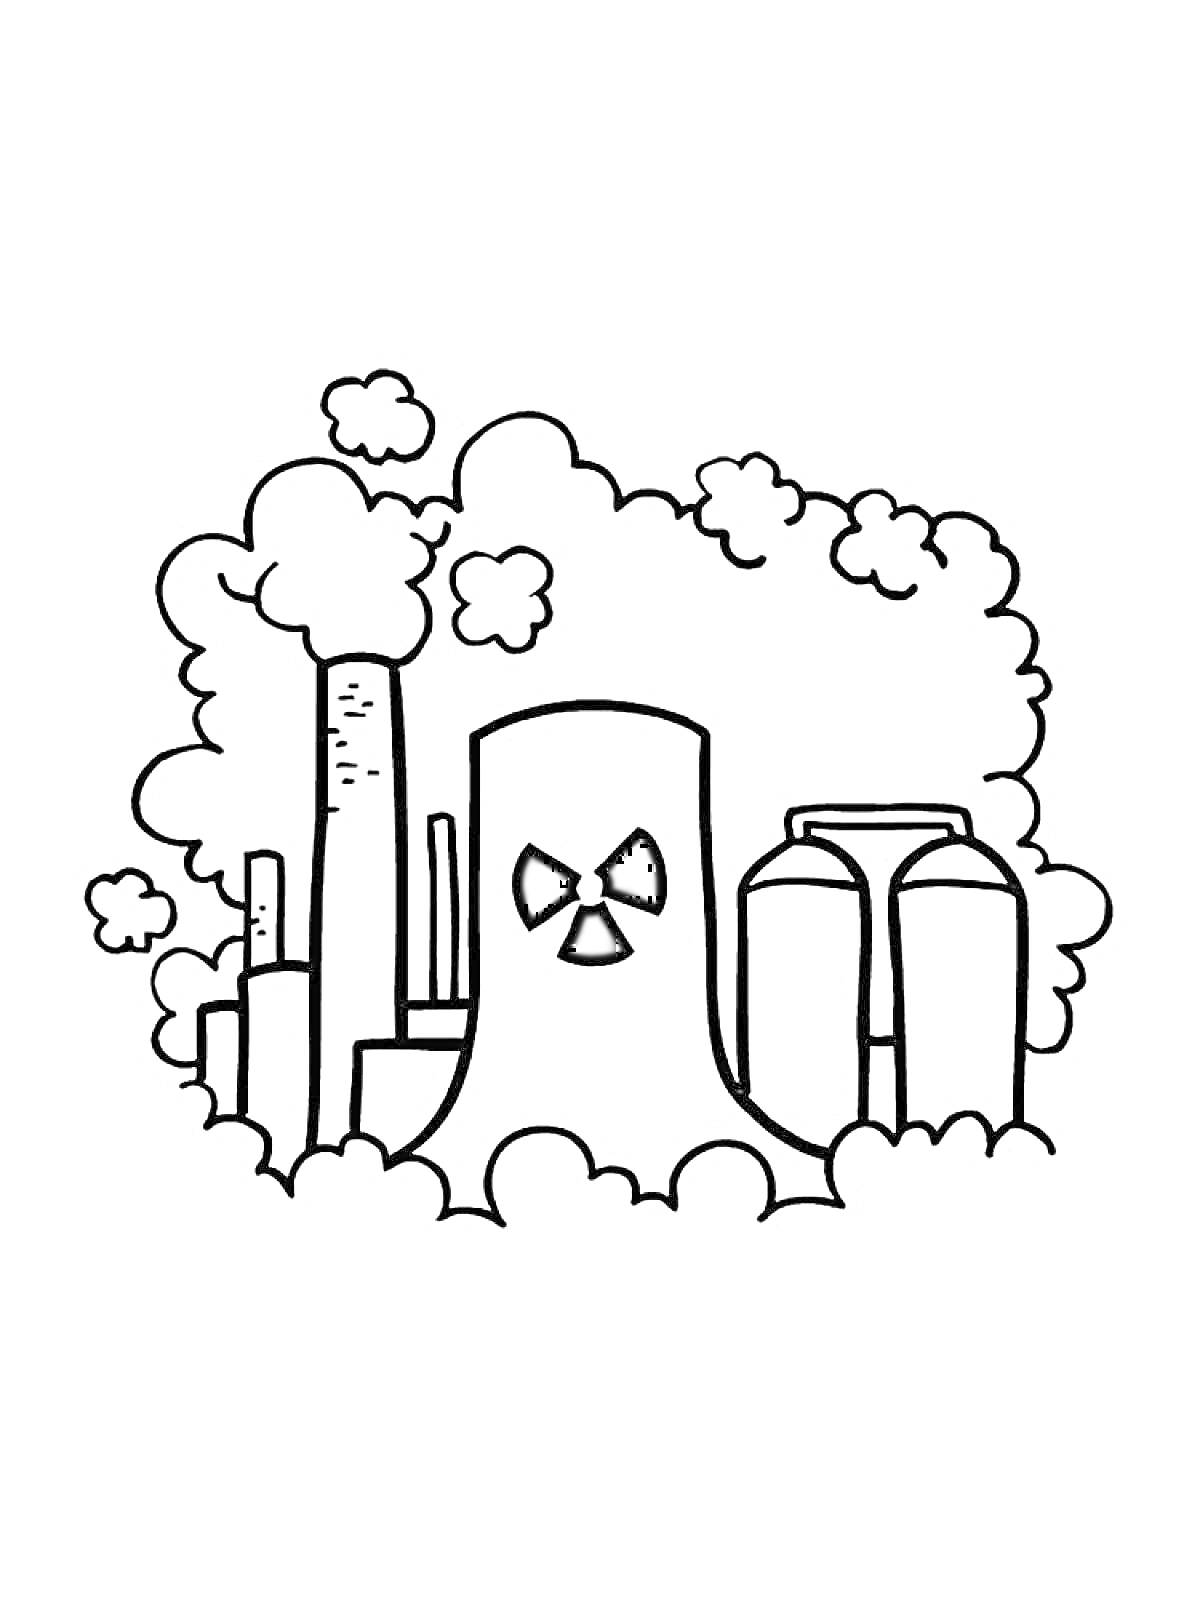 Завод с дымоходами, облаками дыма и символом радиации